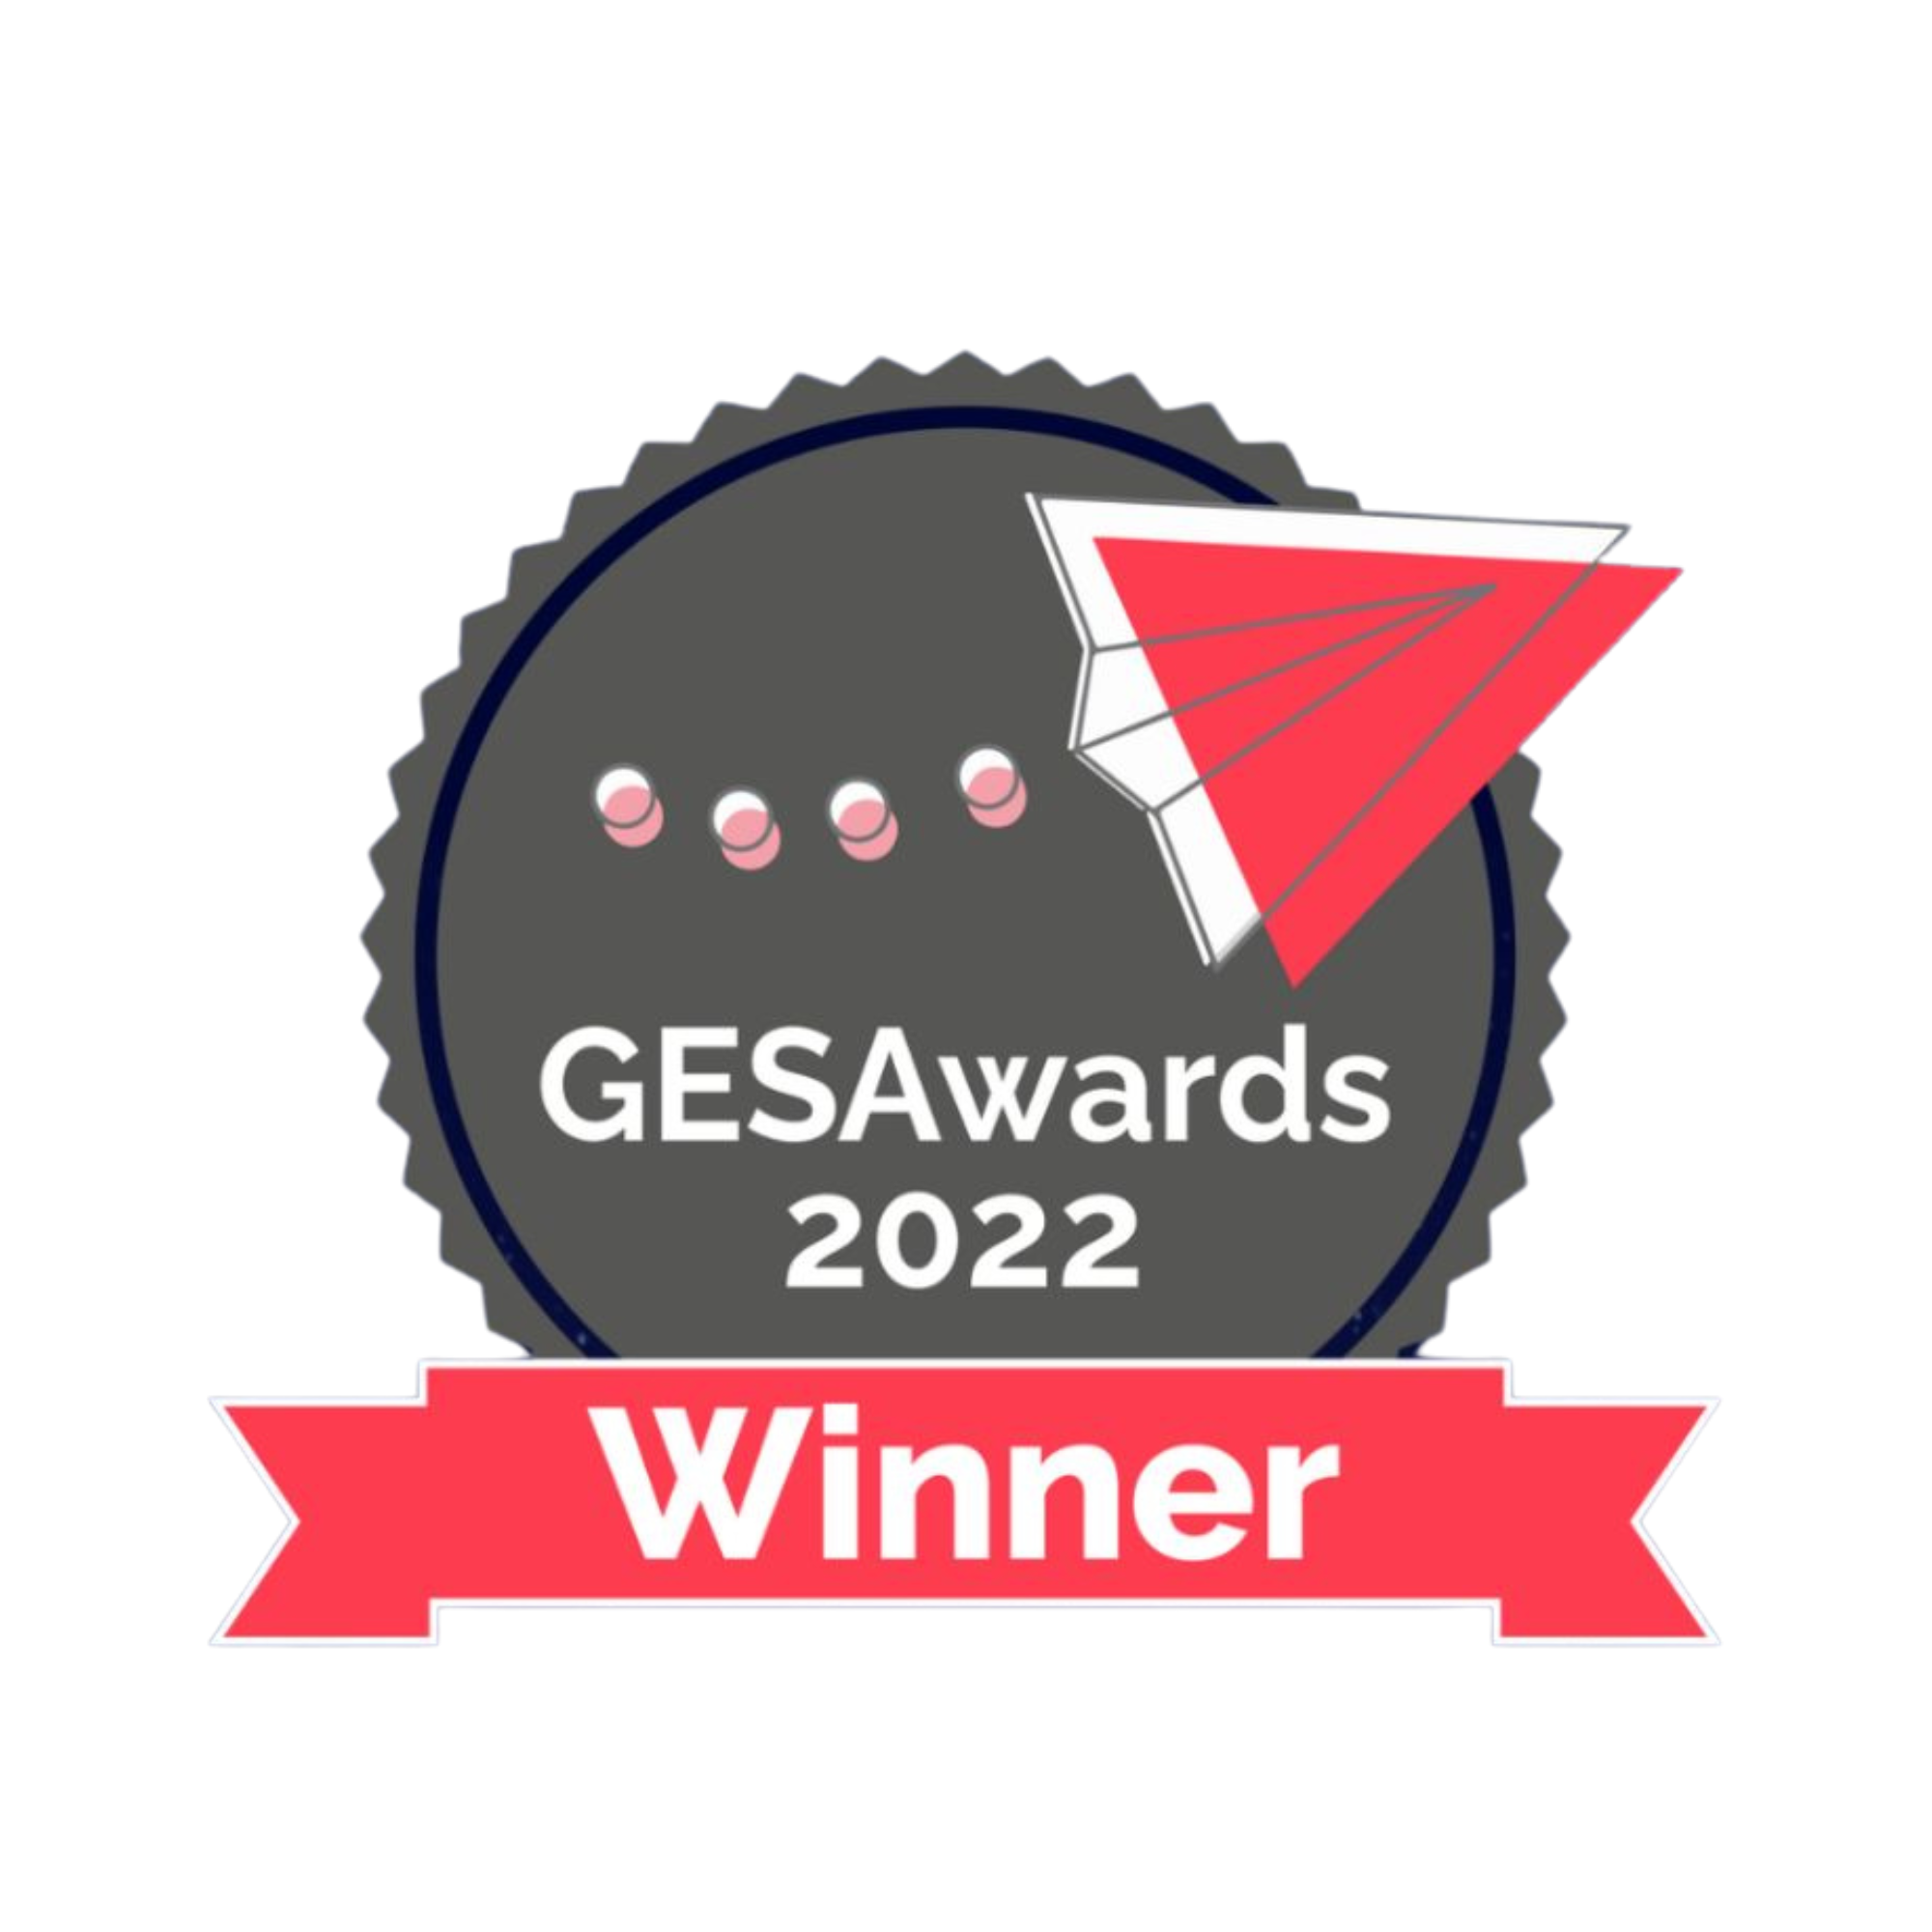 GESAwards 2022 Winner